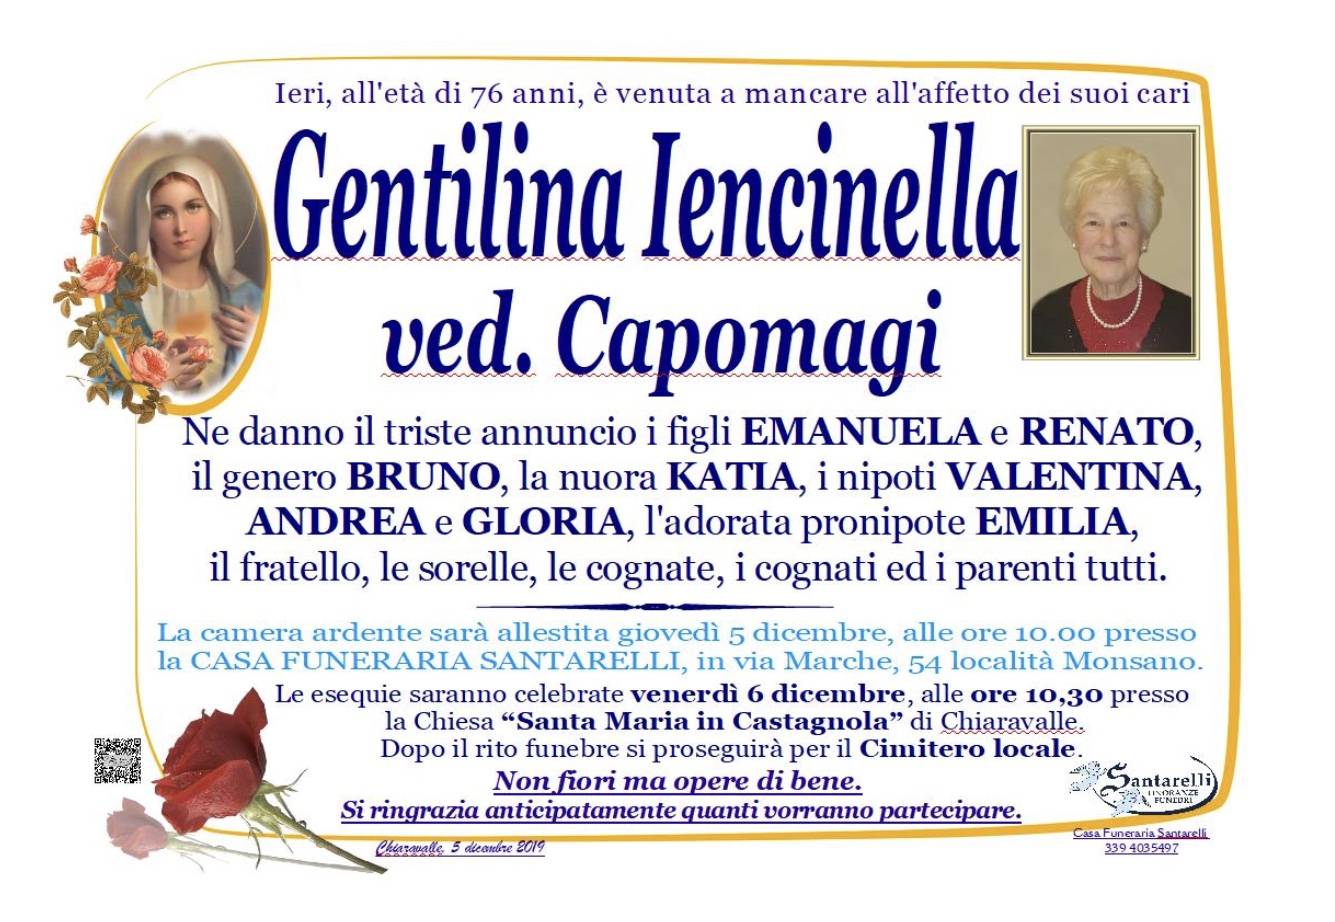 Gentilina Iencinella